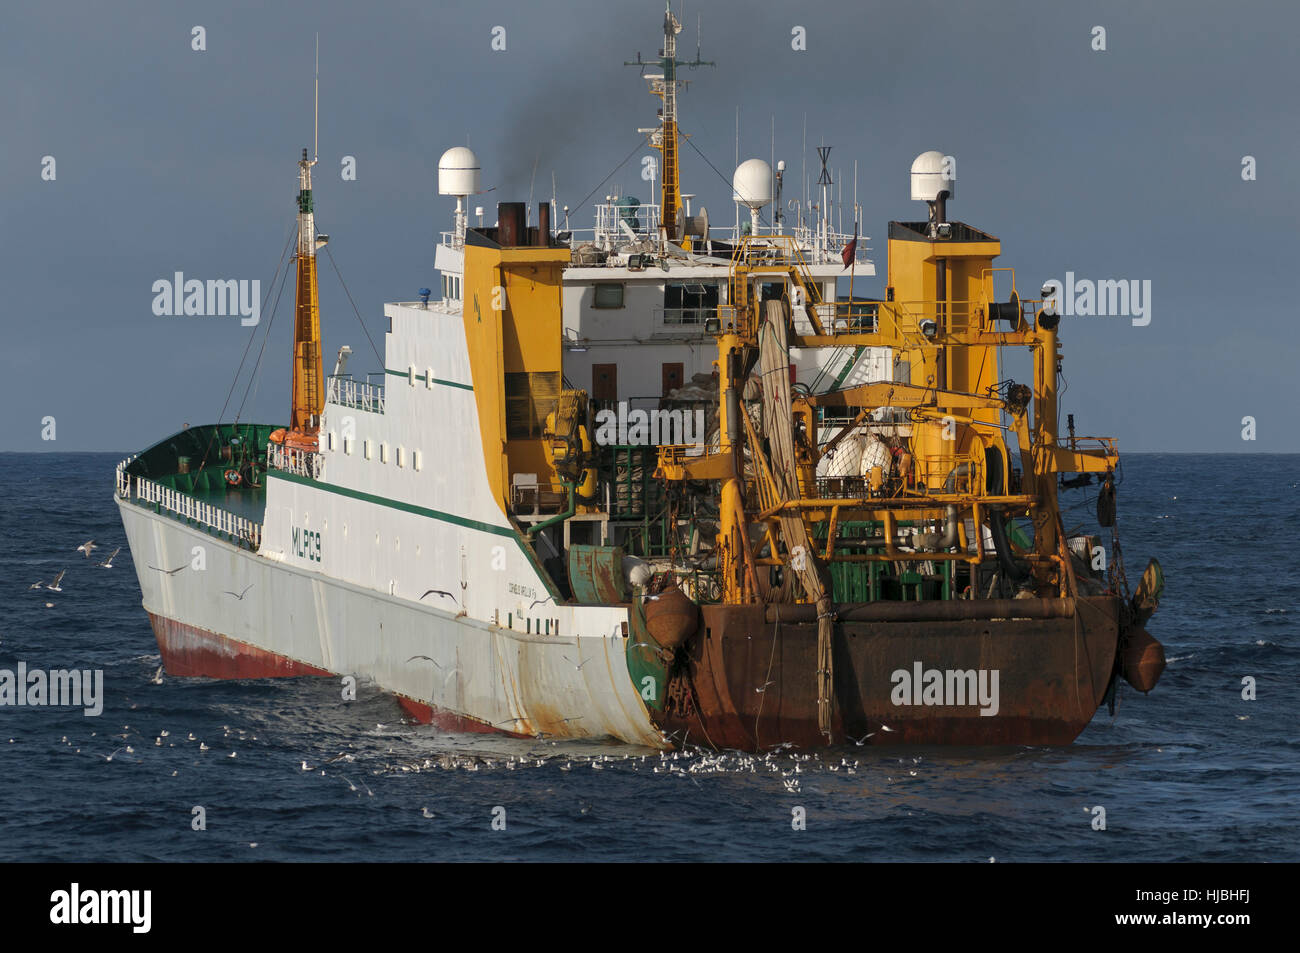 La coque du navire usine "Cornelis Vrolijk" la pêche du maquereau dans Saint Magnus Bay sur la côte ouest de l'archipel des Shetland. Octobre 2012. Banque D'Images